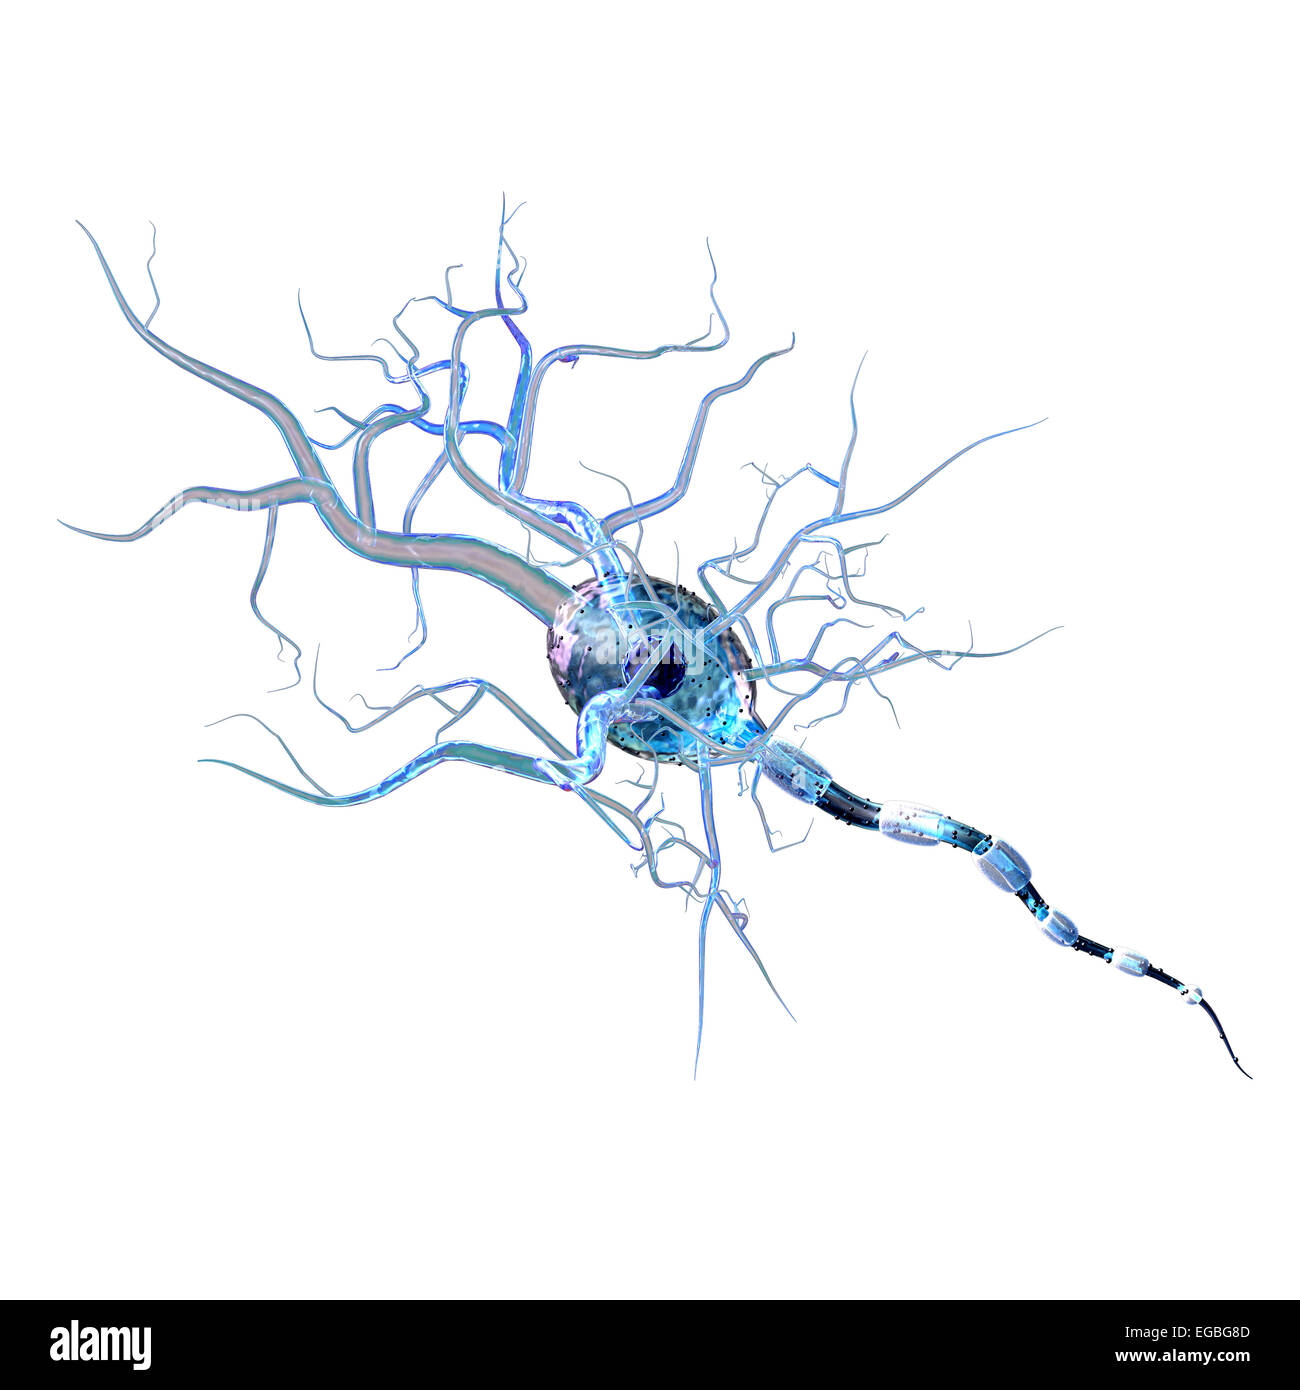 Les cellules nerveuses, concept pour les tumeurs, les maladies neurologiques et une chirurgie du cerveau. Banque D'Images